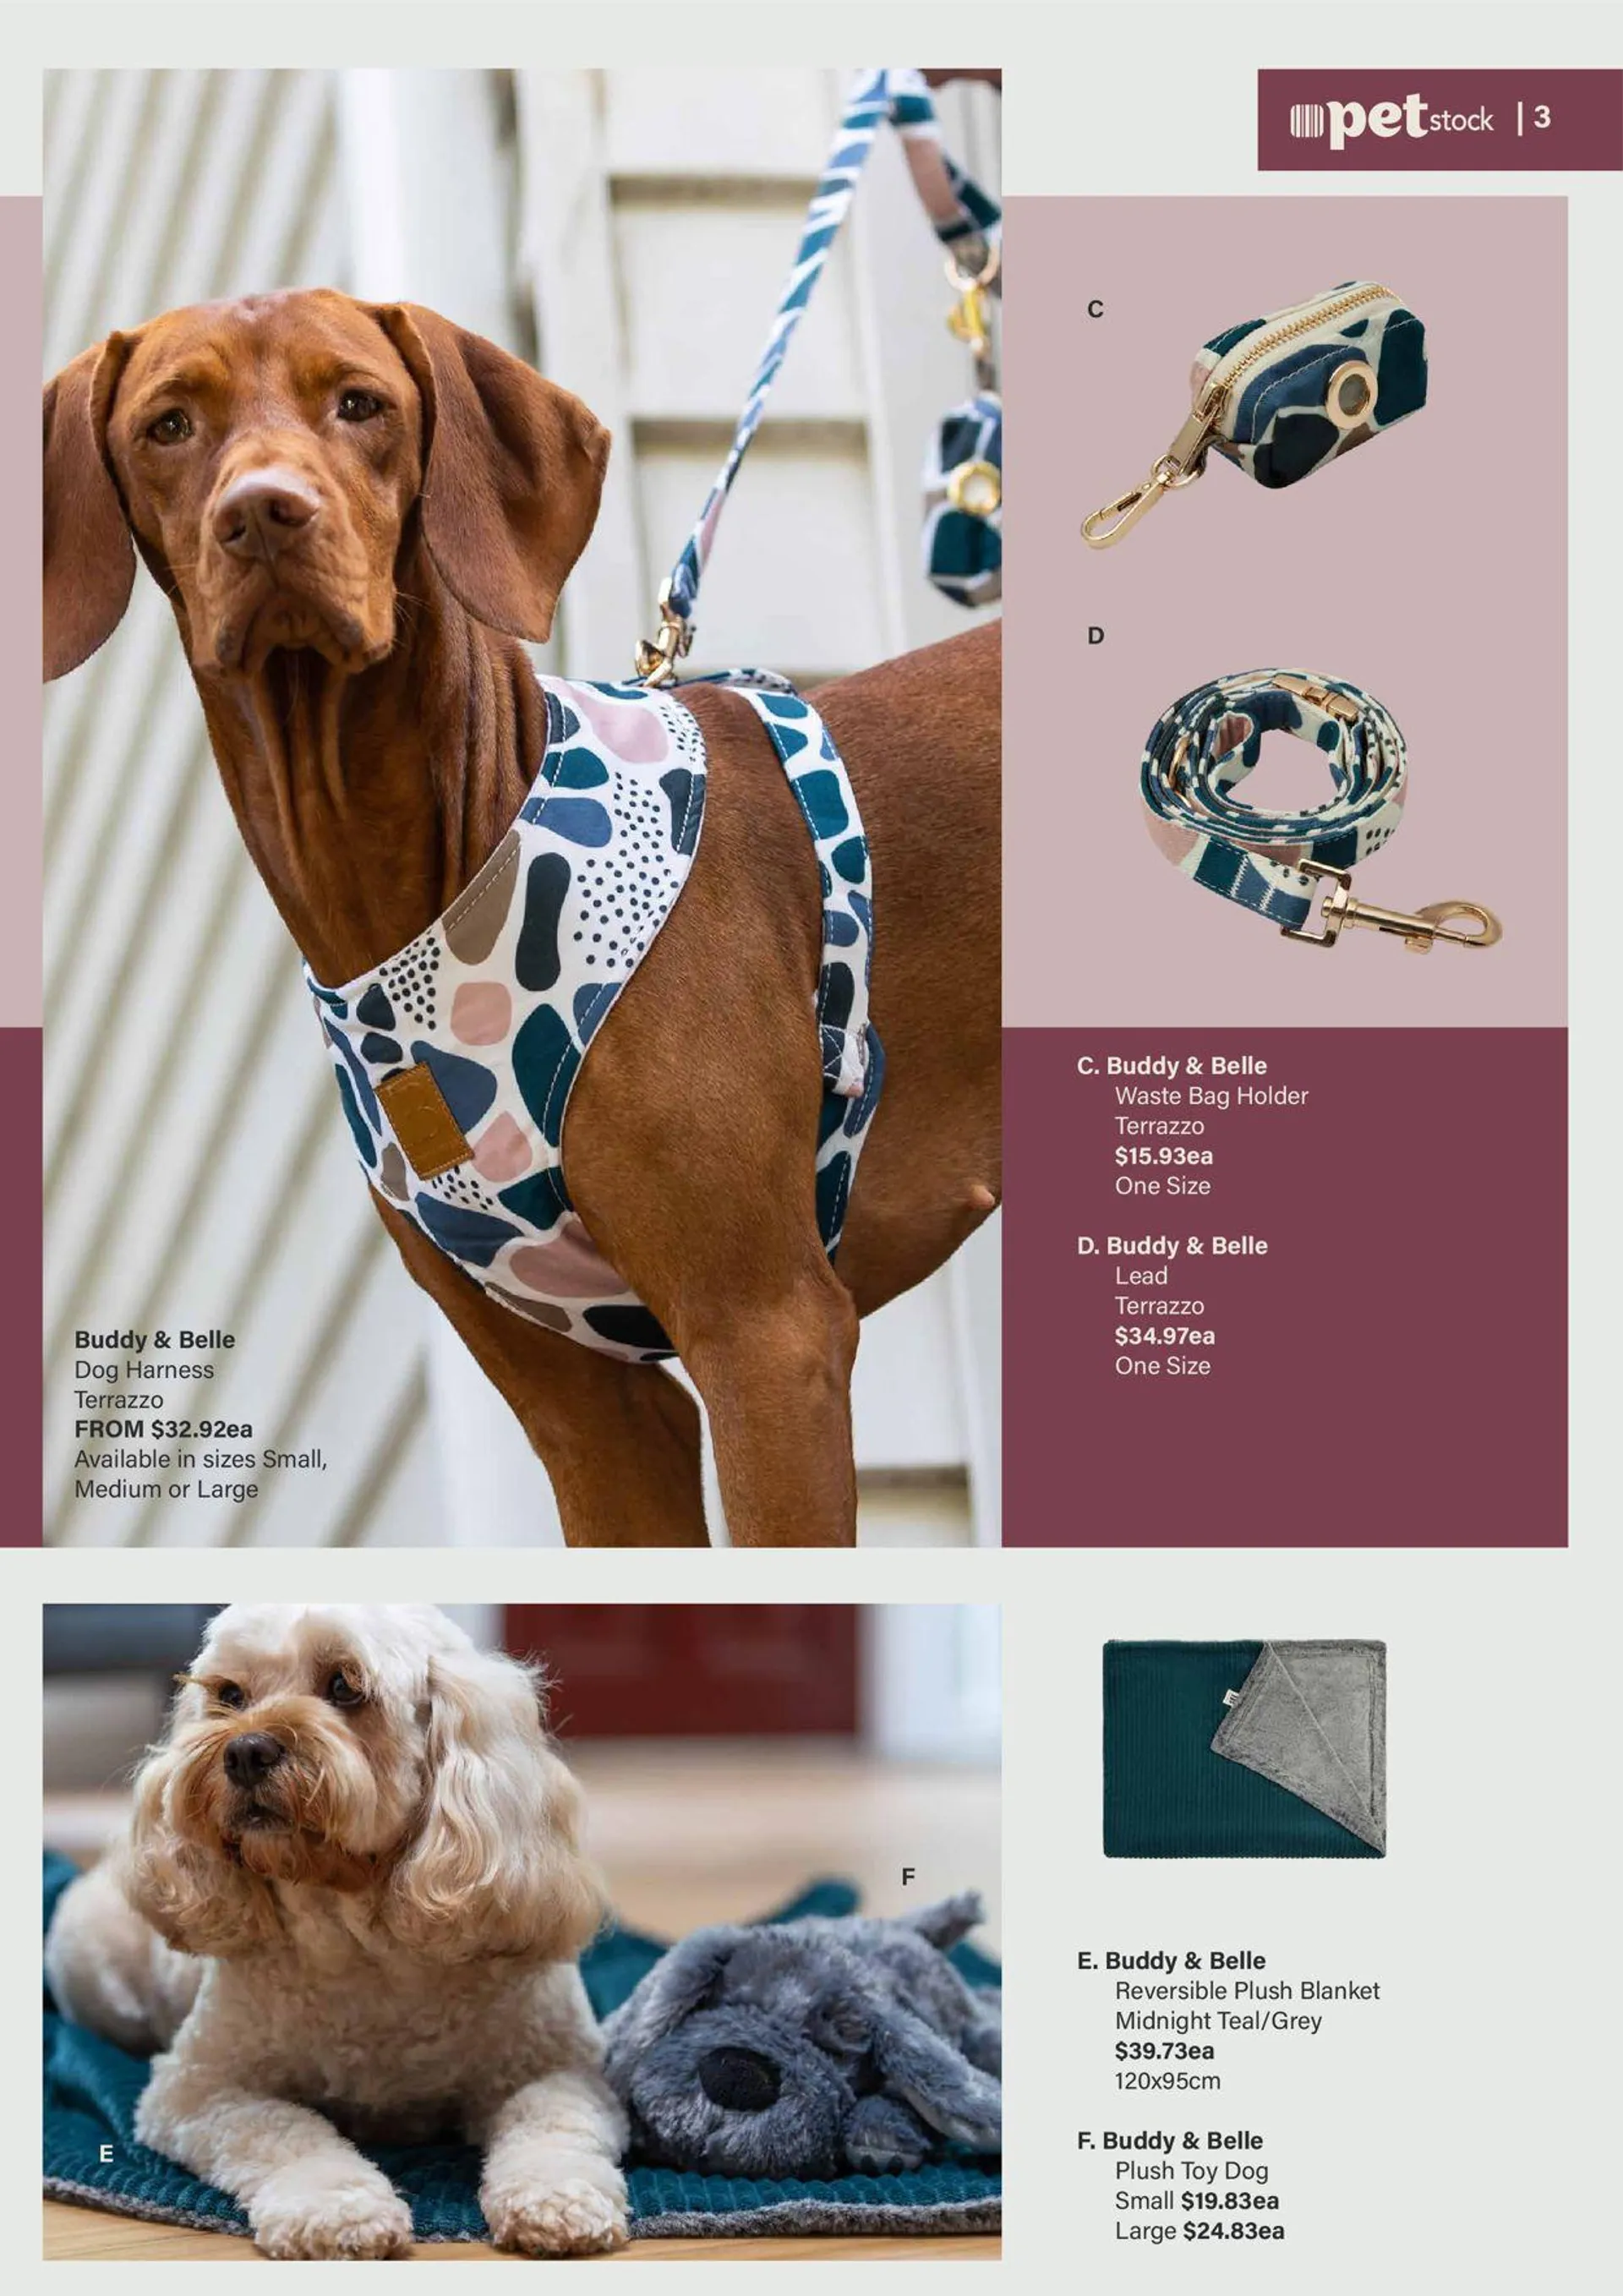 Pet Stock Current catalogue - 3